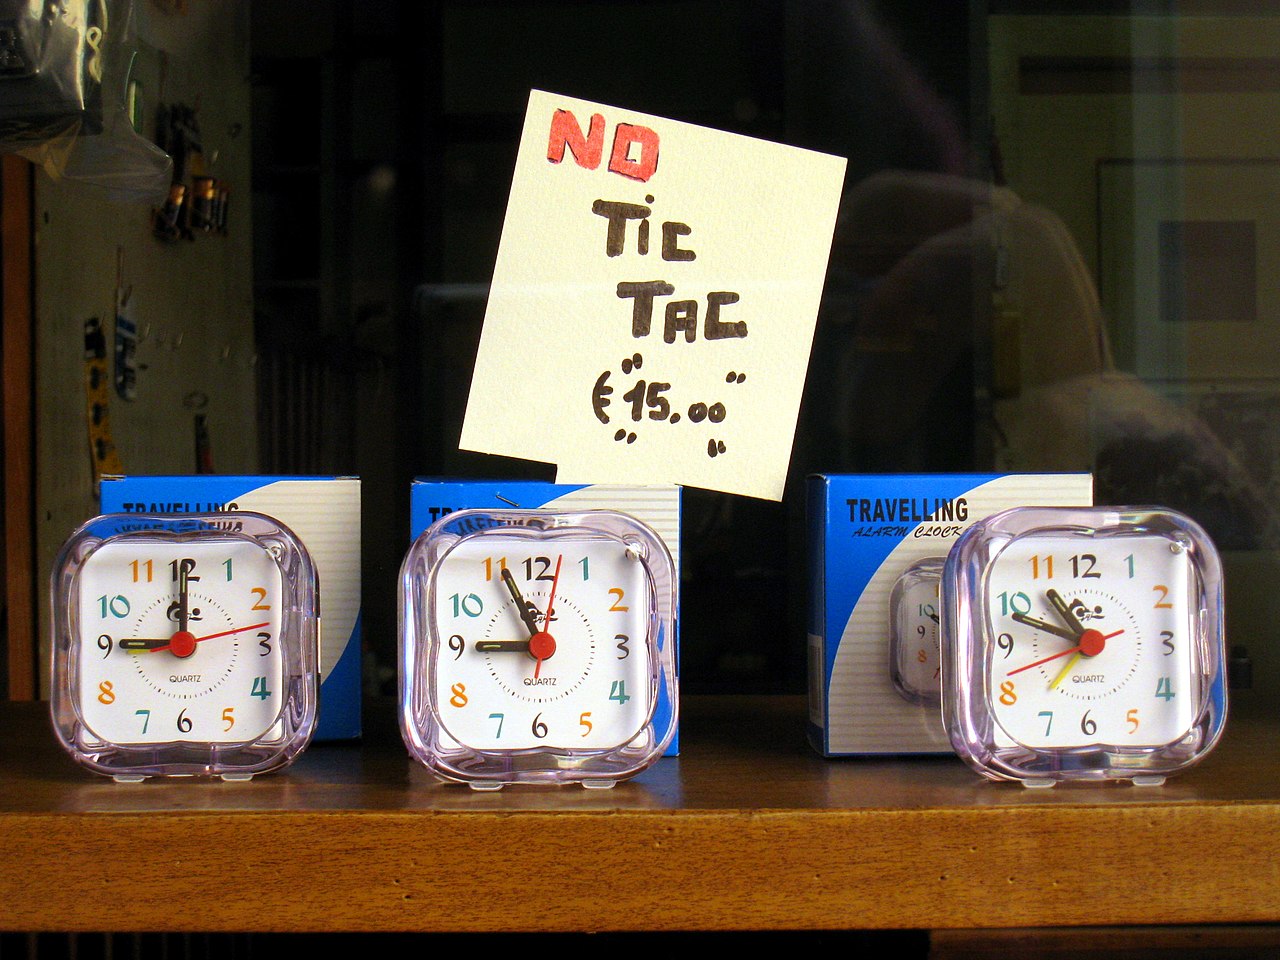 File:Clocks no tic tac.JPG - Wikipedia